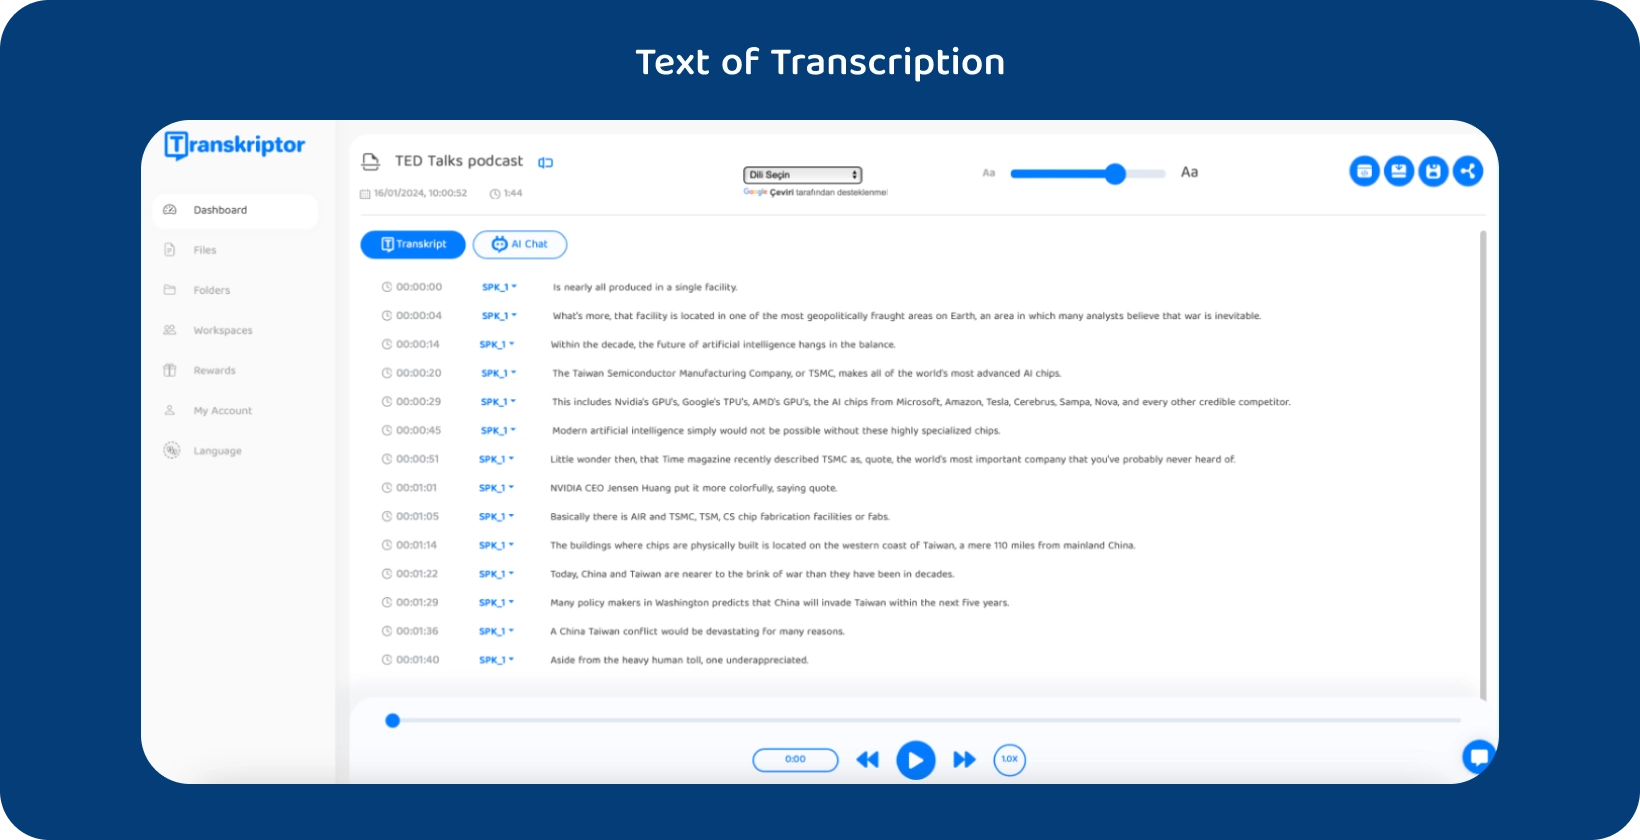 Interfaccia software Transkriptor che mostra un podcast TED Talks trascritto.